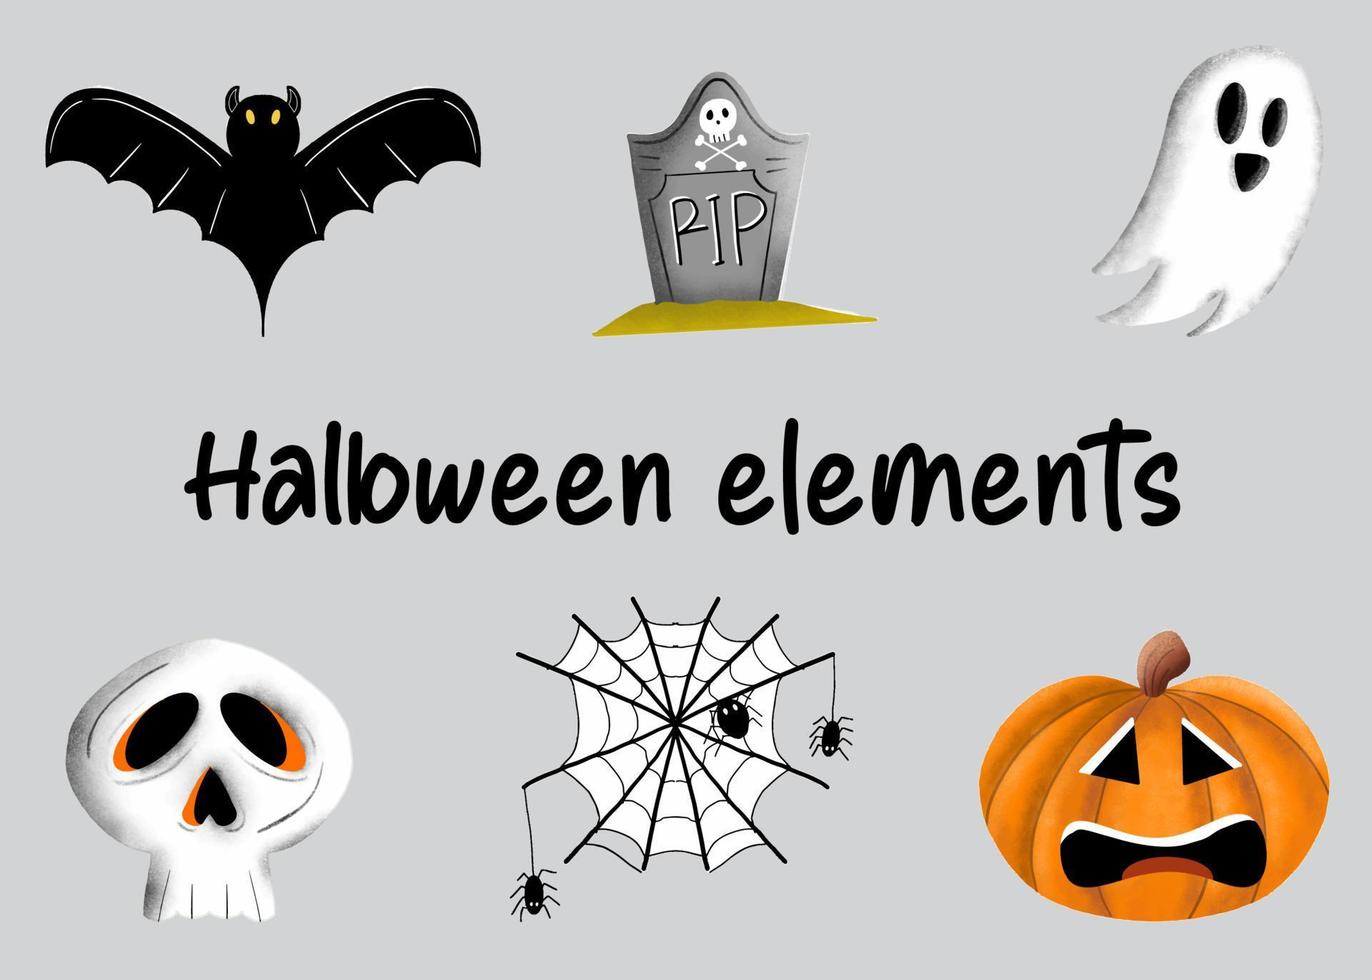 The Halloween Elements vector